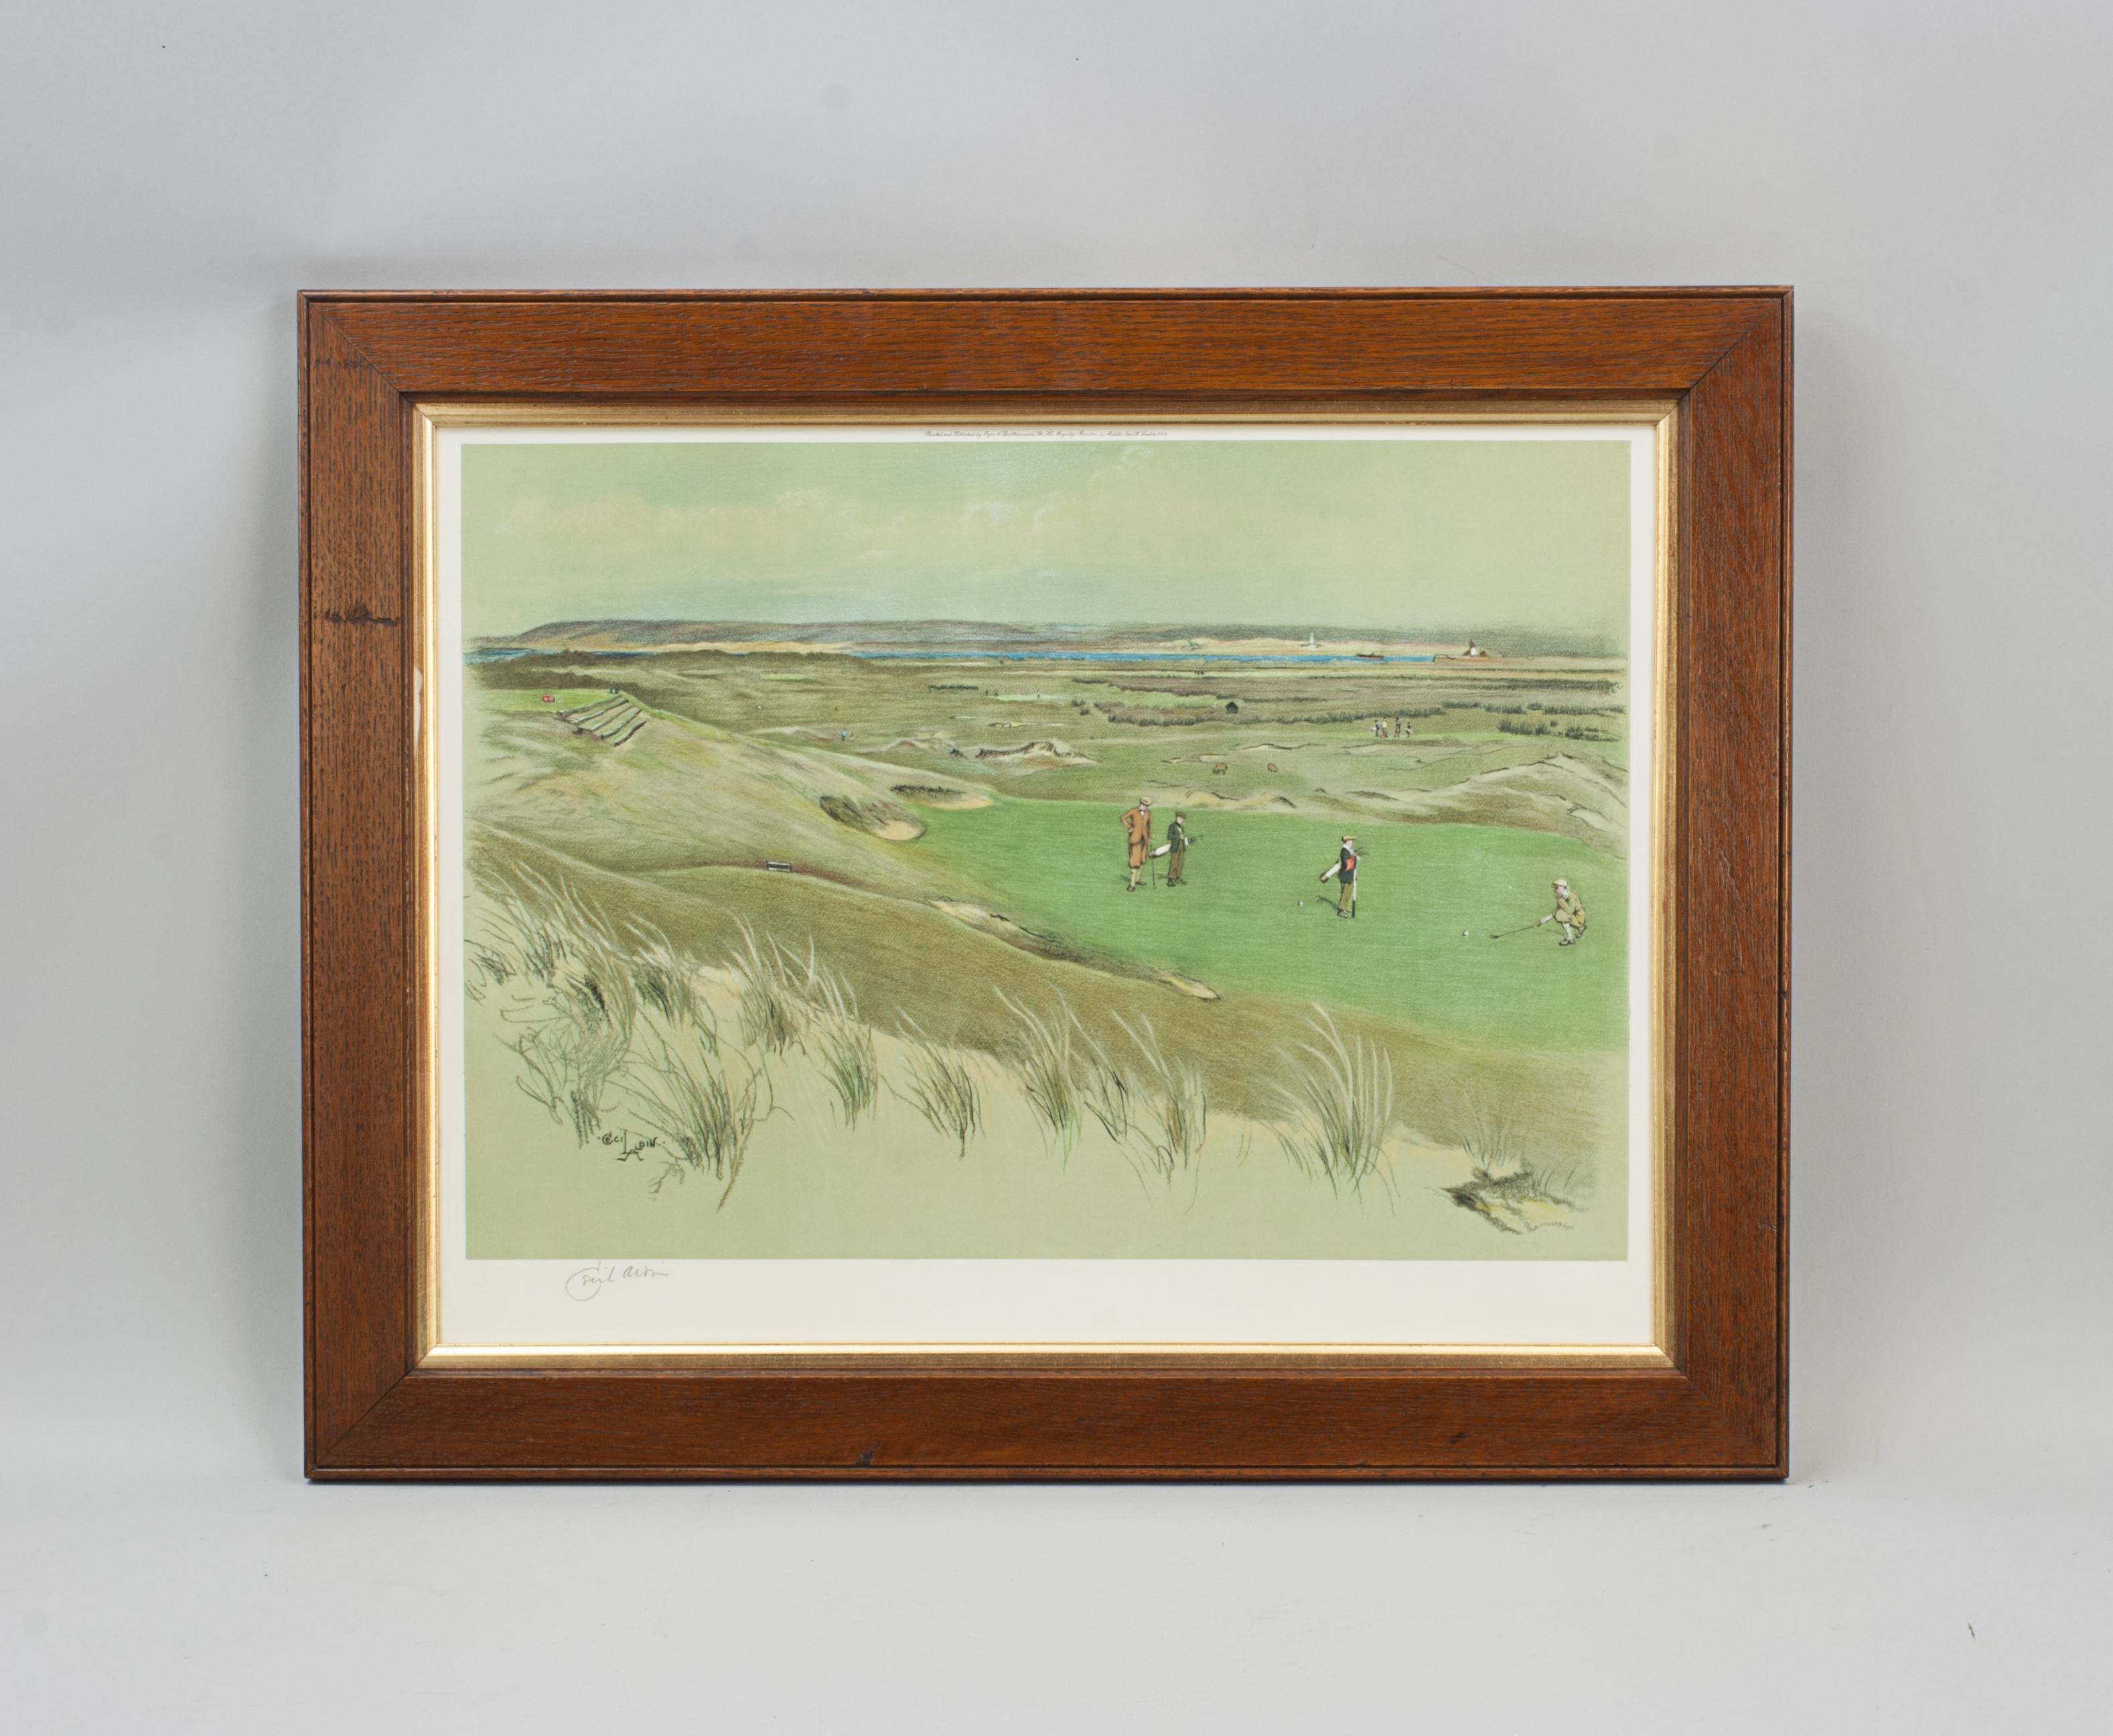 Cecil Aldine Golf Print, Westward Ho!- THE 6th GREEN.
Une photolithographie de golf encadrée et colorée de Westward Ho ! (Royal North Devon Golf Club) 6ème green. Signé au crayon dans la marge inférieure gauche par l'artiste, Cecil Aldine. Imprimé